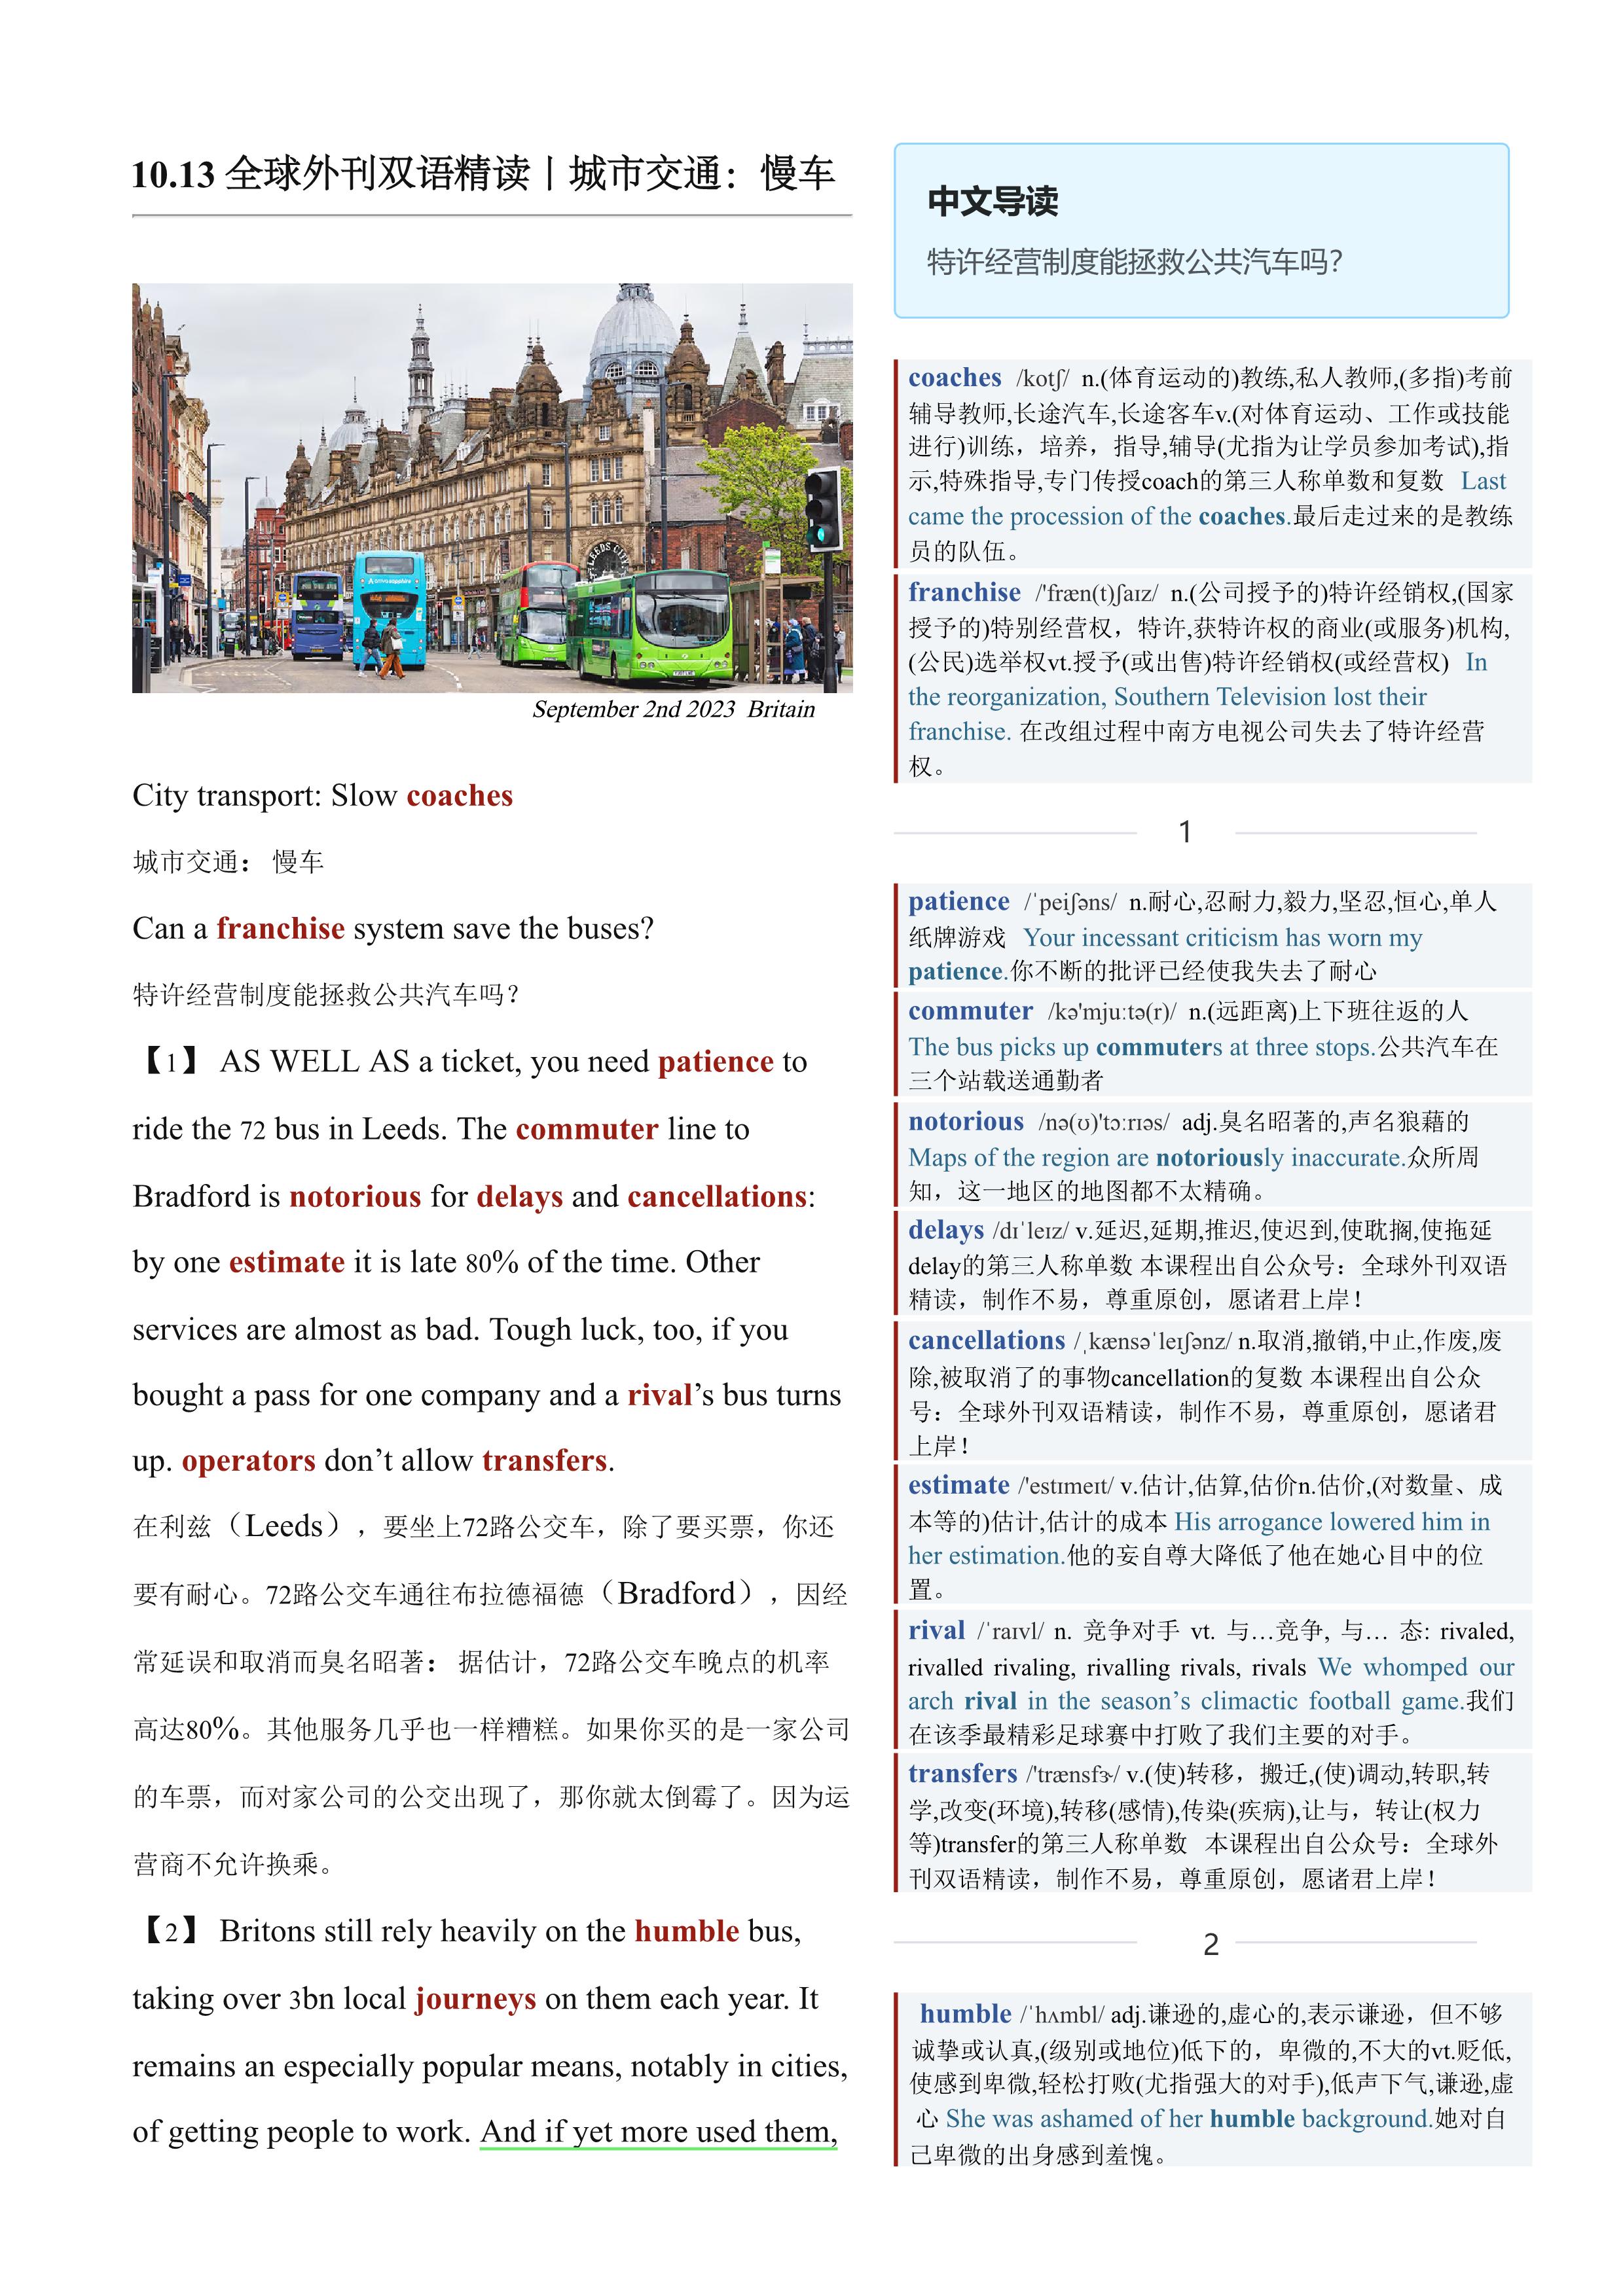 2023.10.13 经济学人双语精读丨城市交通：慢车 (.PDF/DOC/MP3)